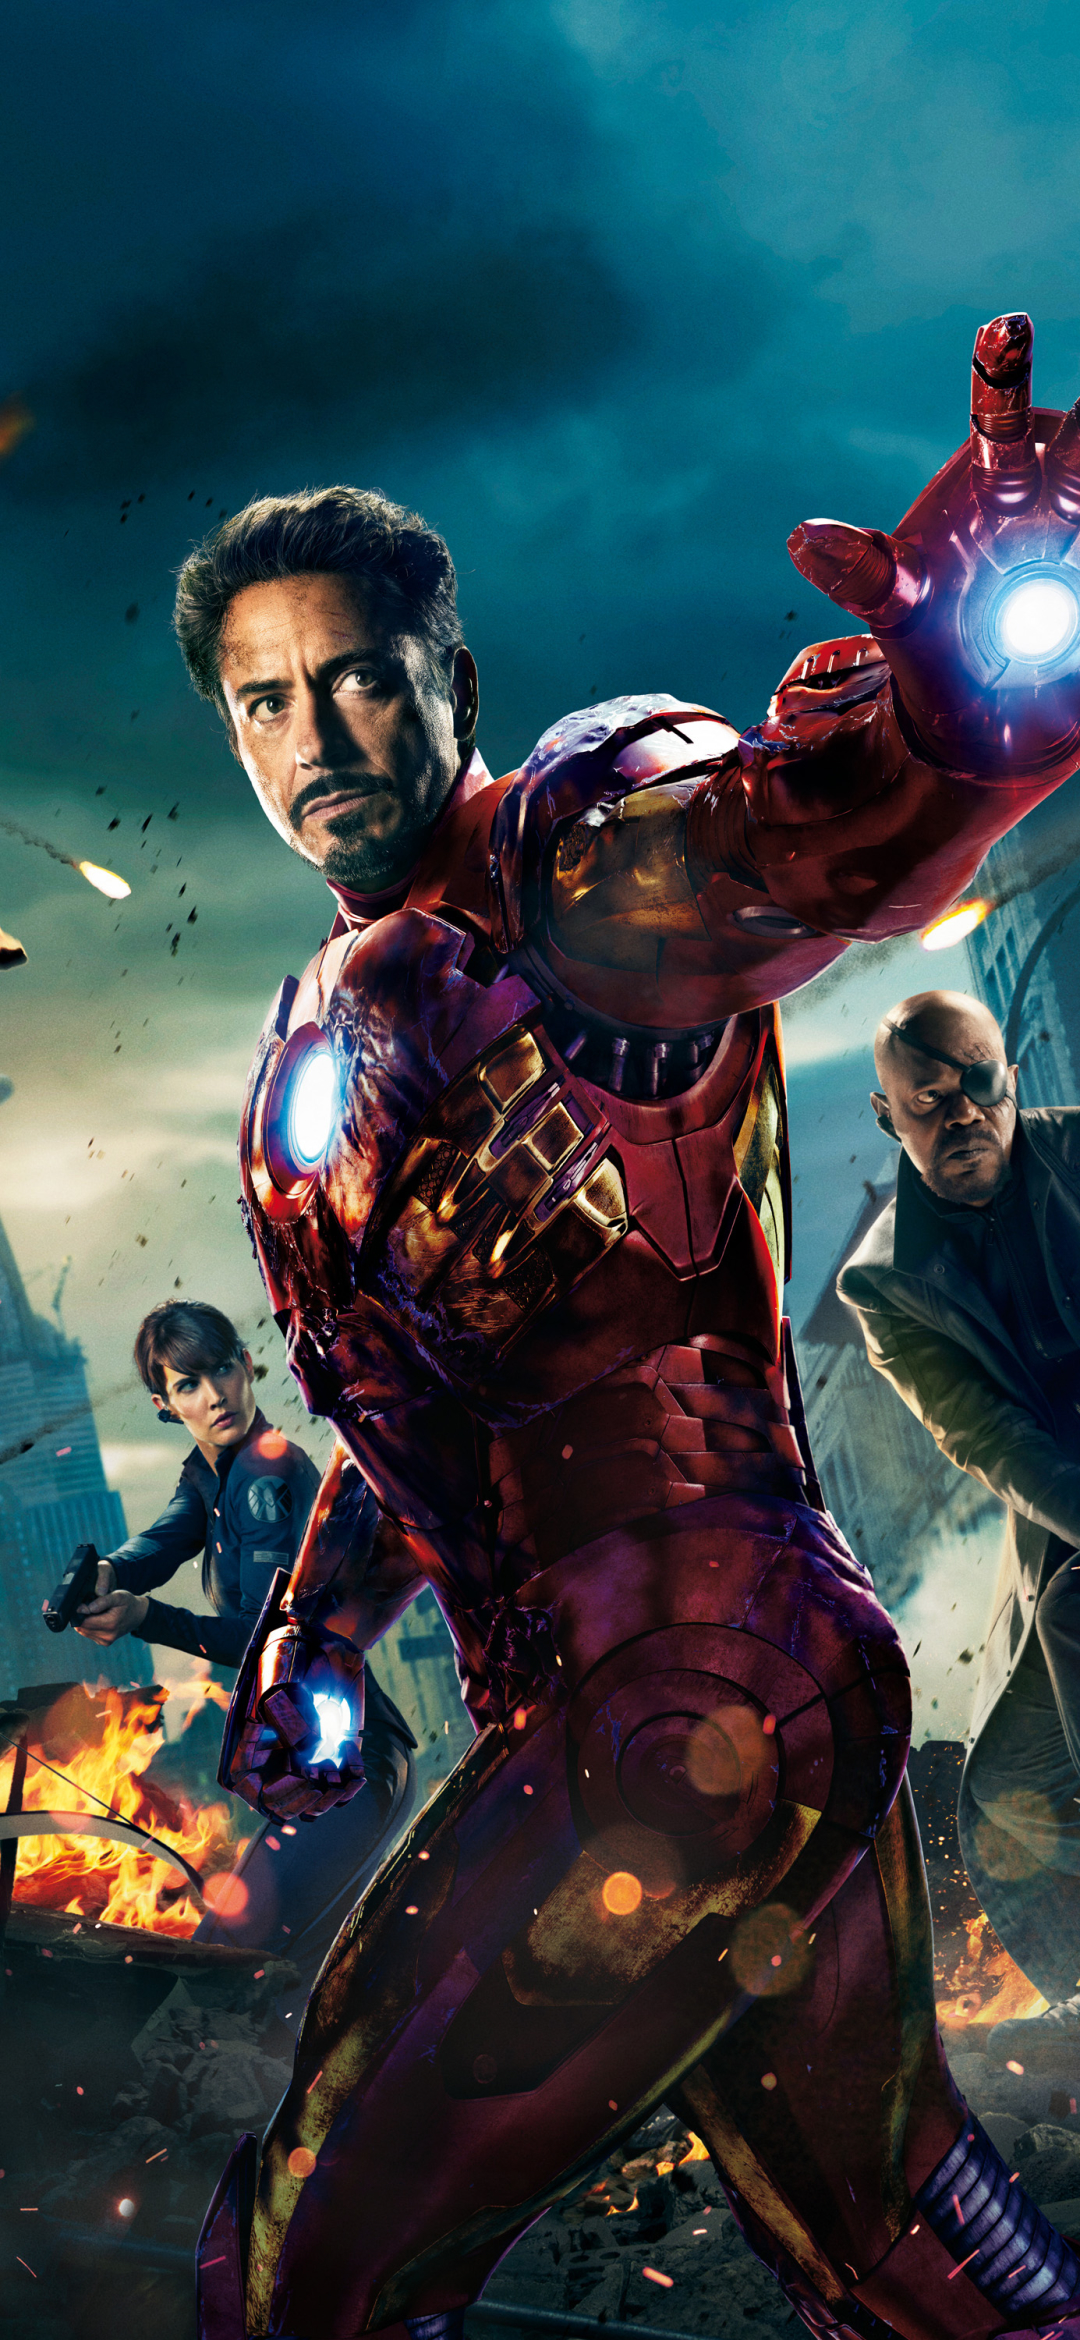 Descarga gratuita de fondo de pantalla para móvil de Los Vengadores, Películas, Hombre De Acero, Tony Stark, Nick Fury, Vengadores.